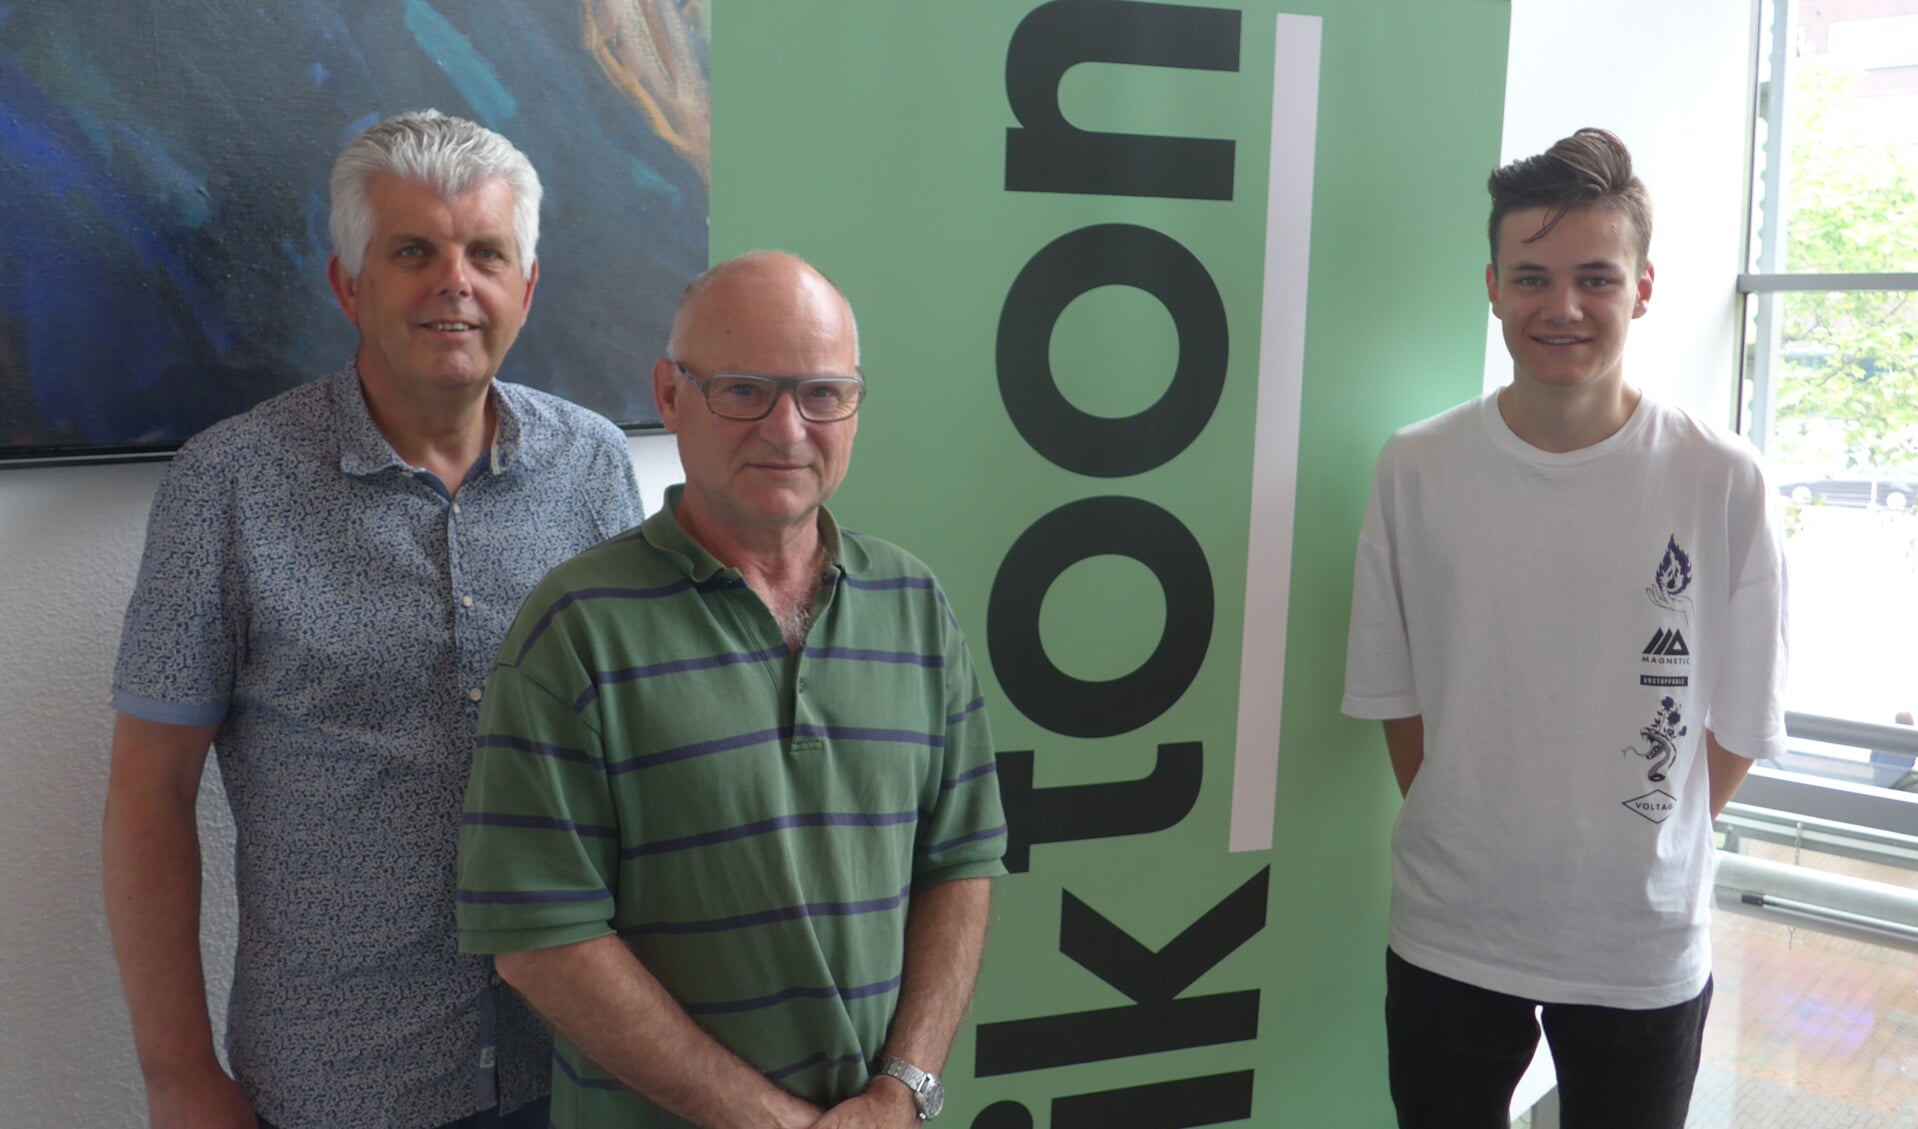 André Vulperhorst, Kees Jan Boerman en Stan van den Bos (links naar rechts) voor de poster van de Iktoon maand